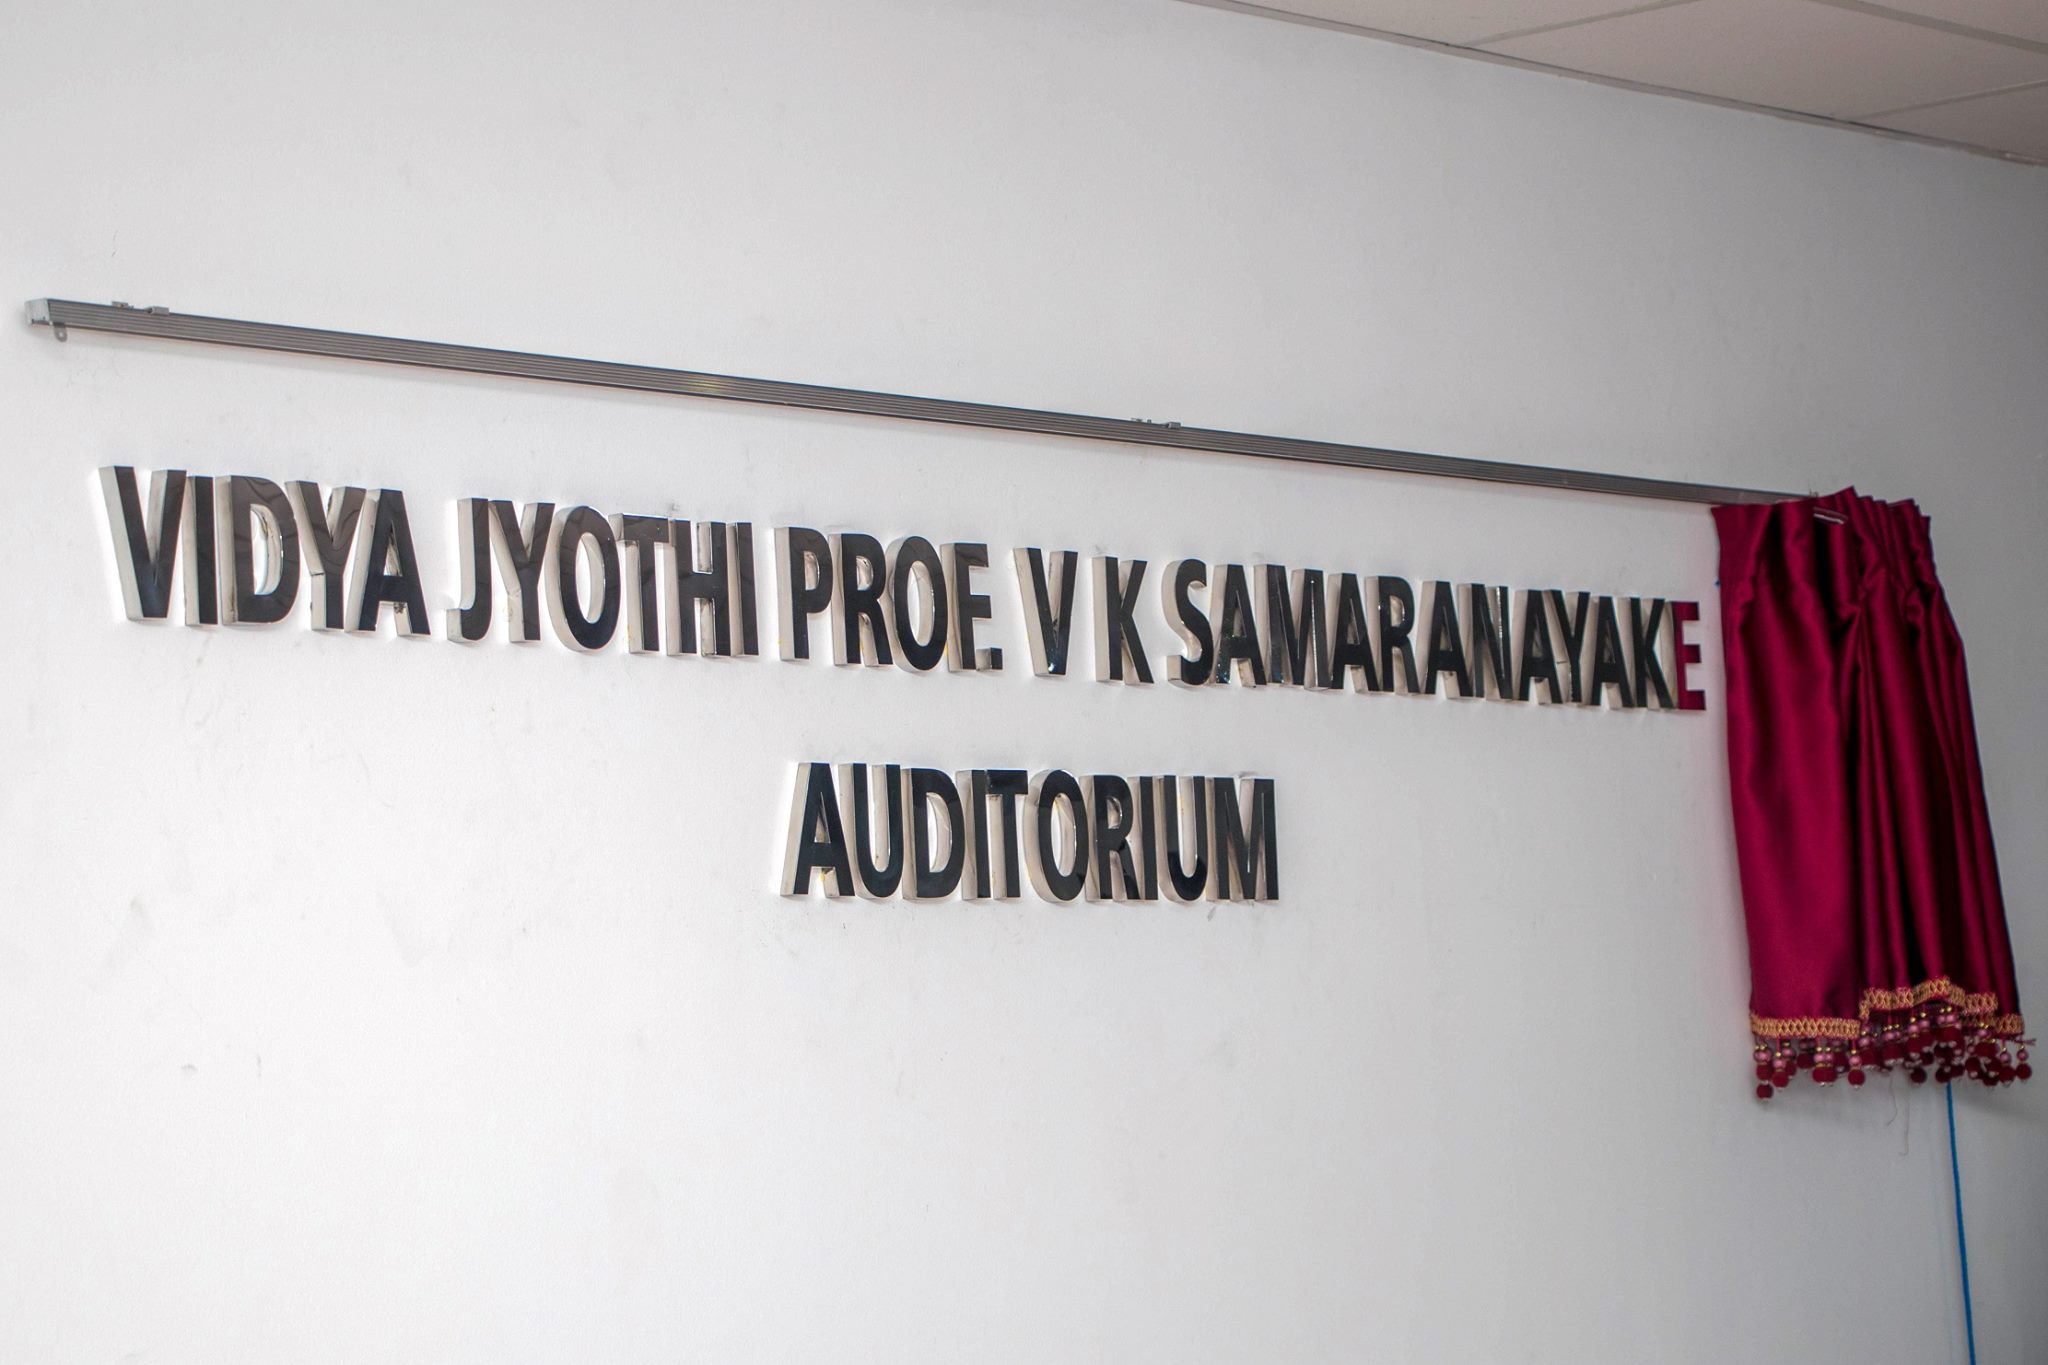 Opening of the Vidya Jyothi Professor V K Samaranayake Auditorium